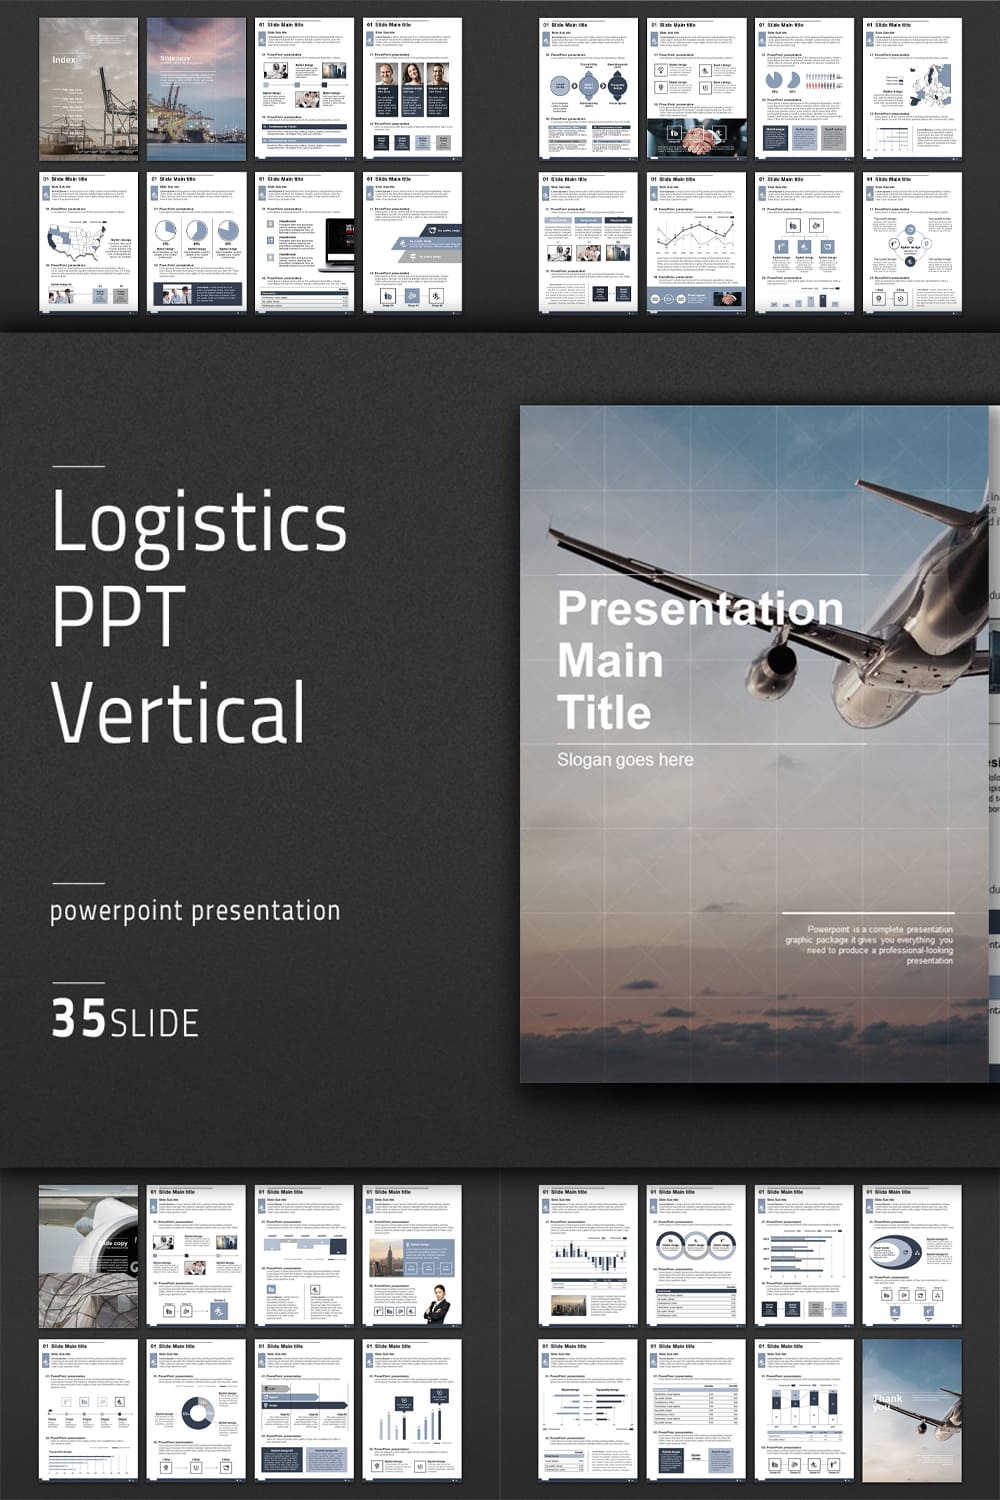 Logistics PPT Vertical Pinterest.